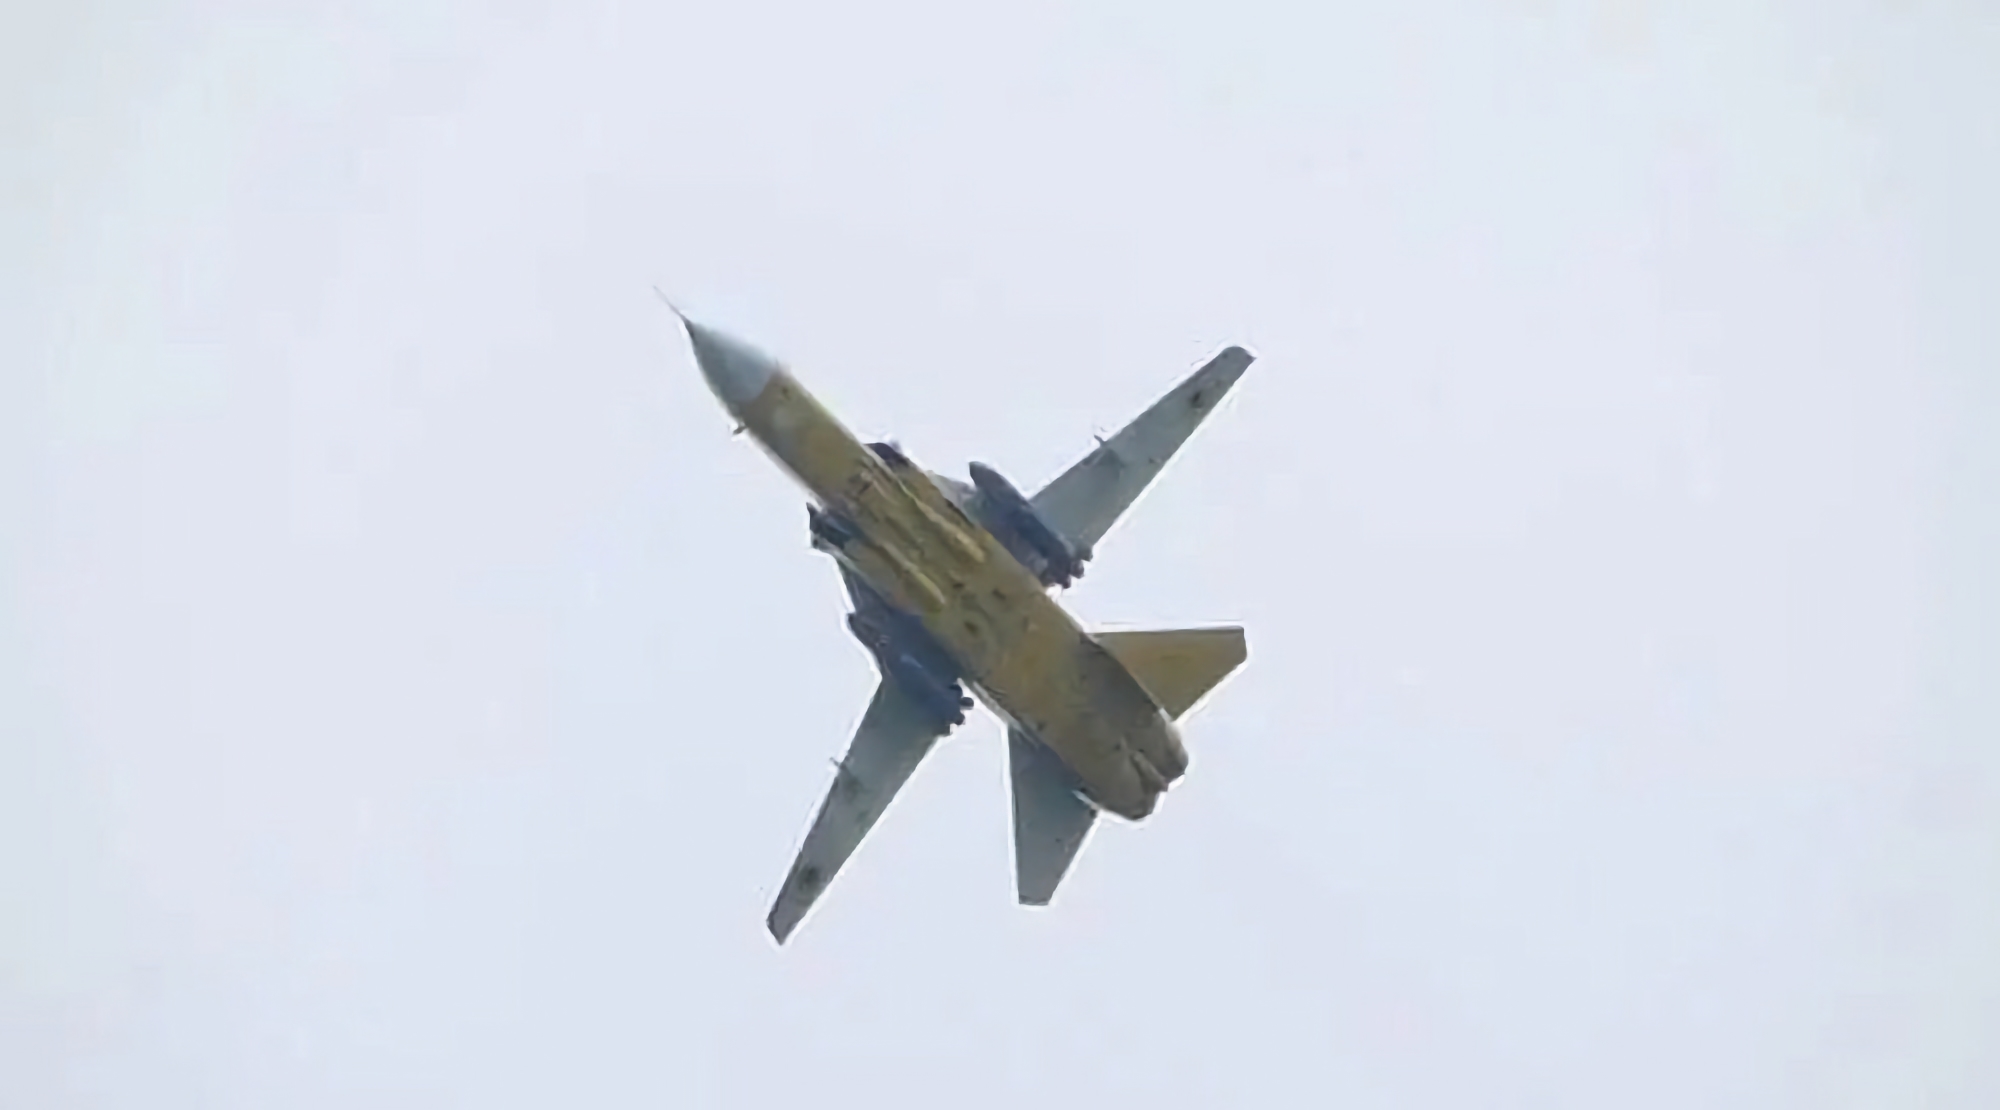 Los bombarderos ucranianos Su-24 tienen pilones de aviones Tornado británicos, lo que les permite llevar misiles Storm Shadow